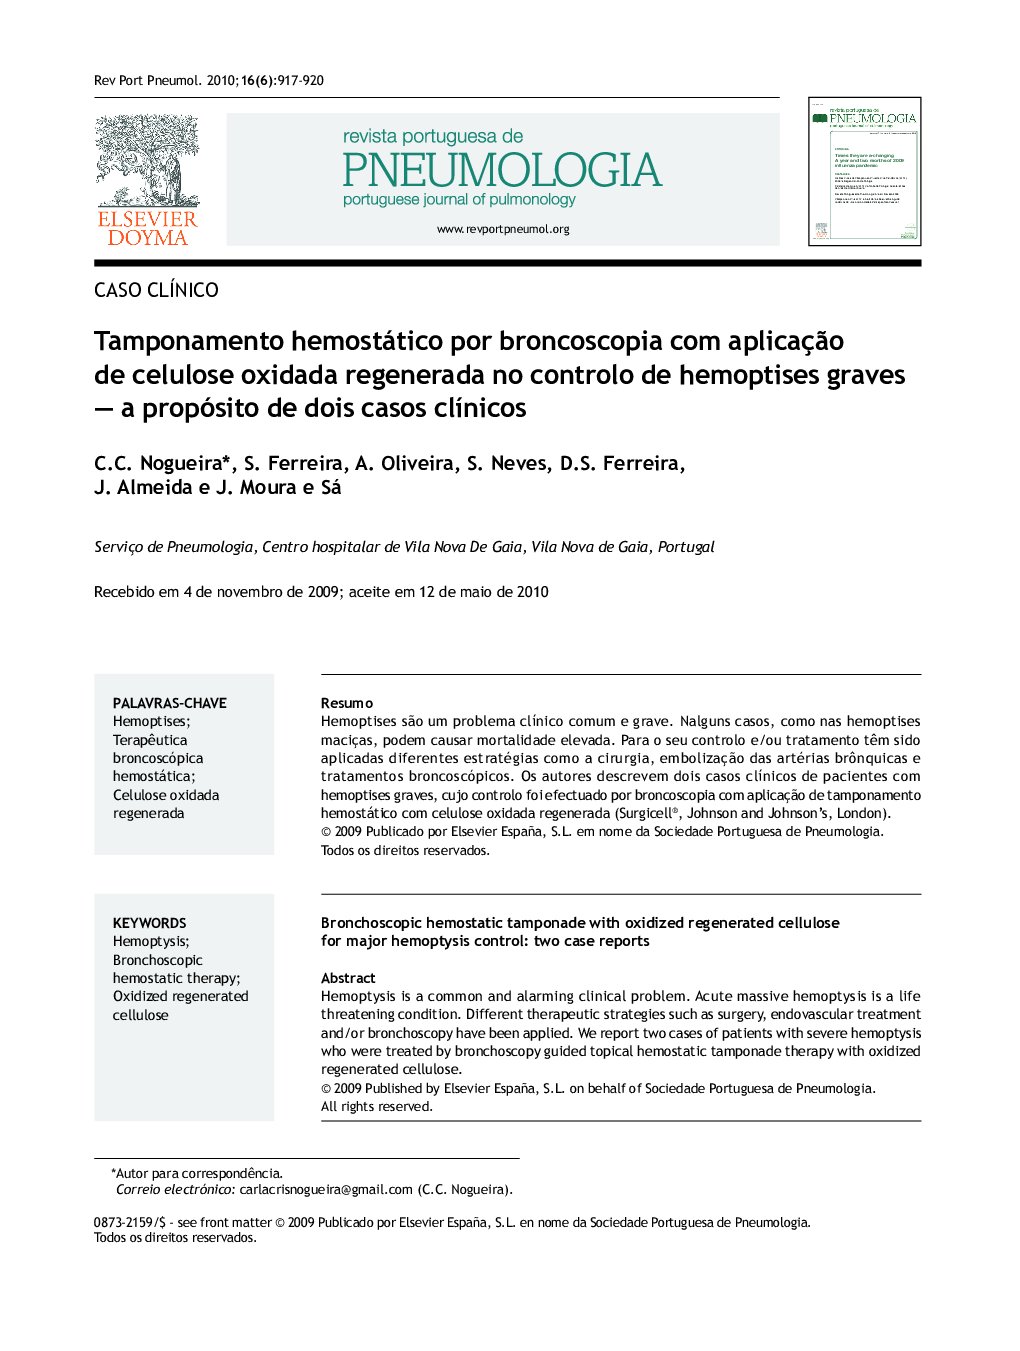 Tamponamento hemostático por broncoscopia com aplicação de celulose oxidada regenerada no controlo de hemoptises graves — a propósito de dois casos clínicos